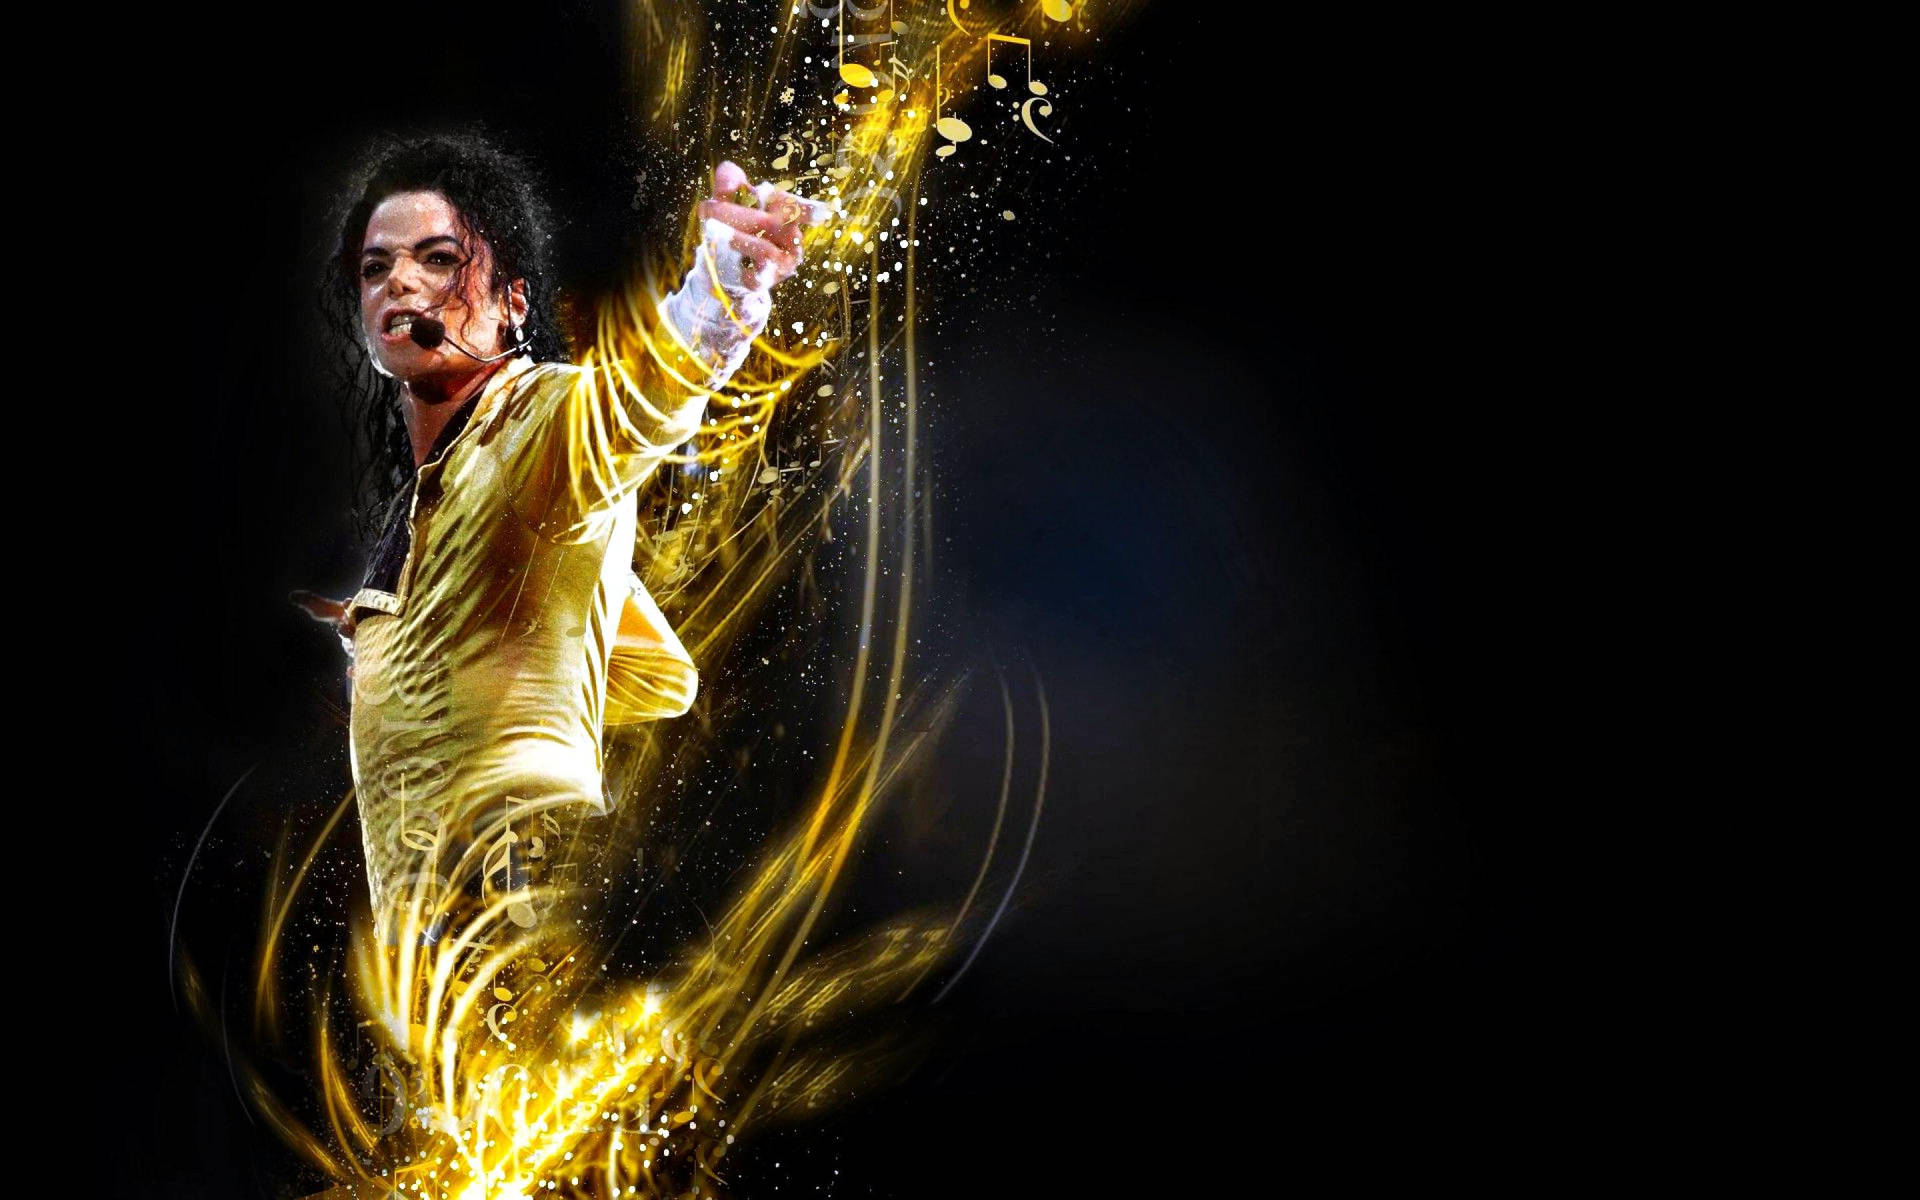 Free Michael Jackson Wallpaper Downloads, [100+] Michael Jackson Wallpapers  for FREE 